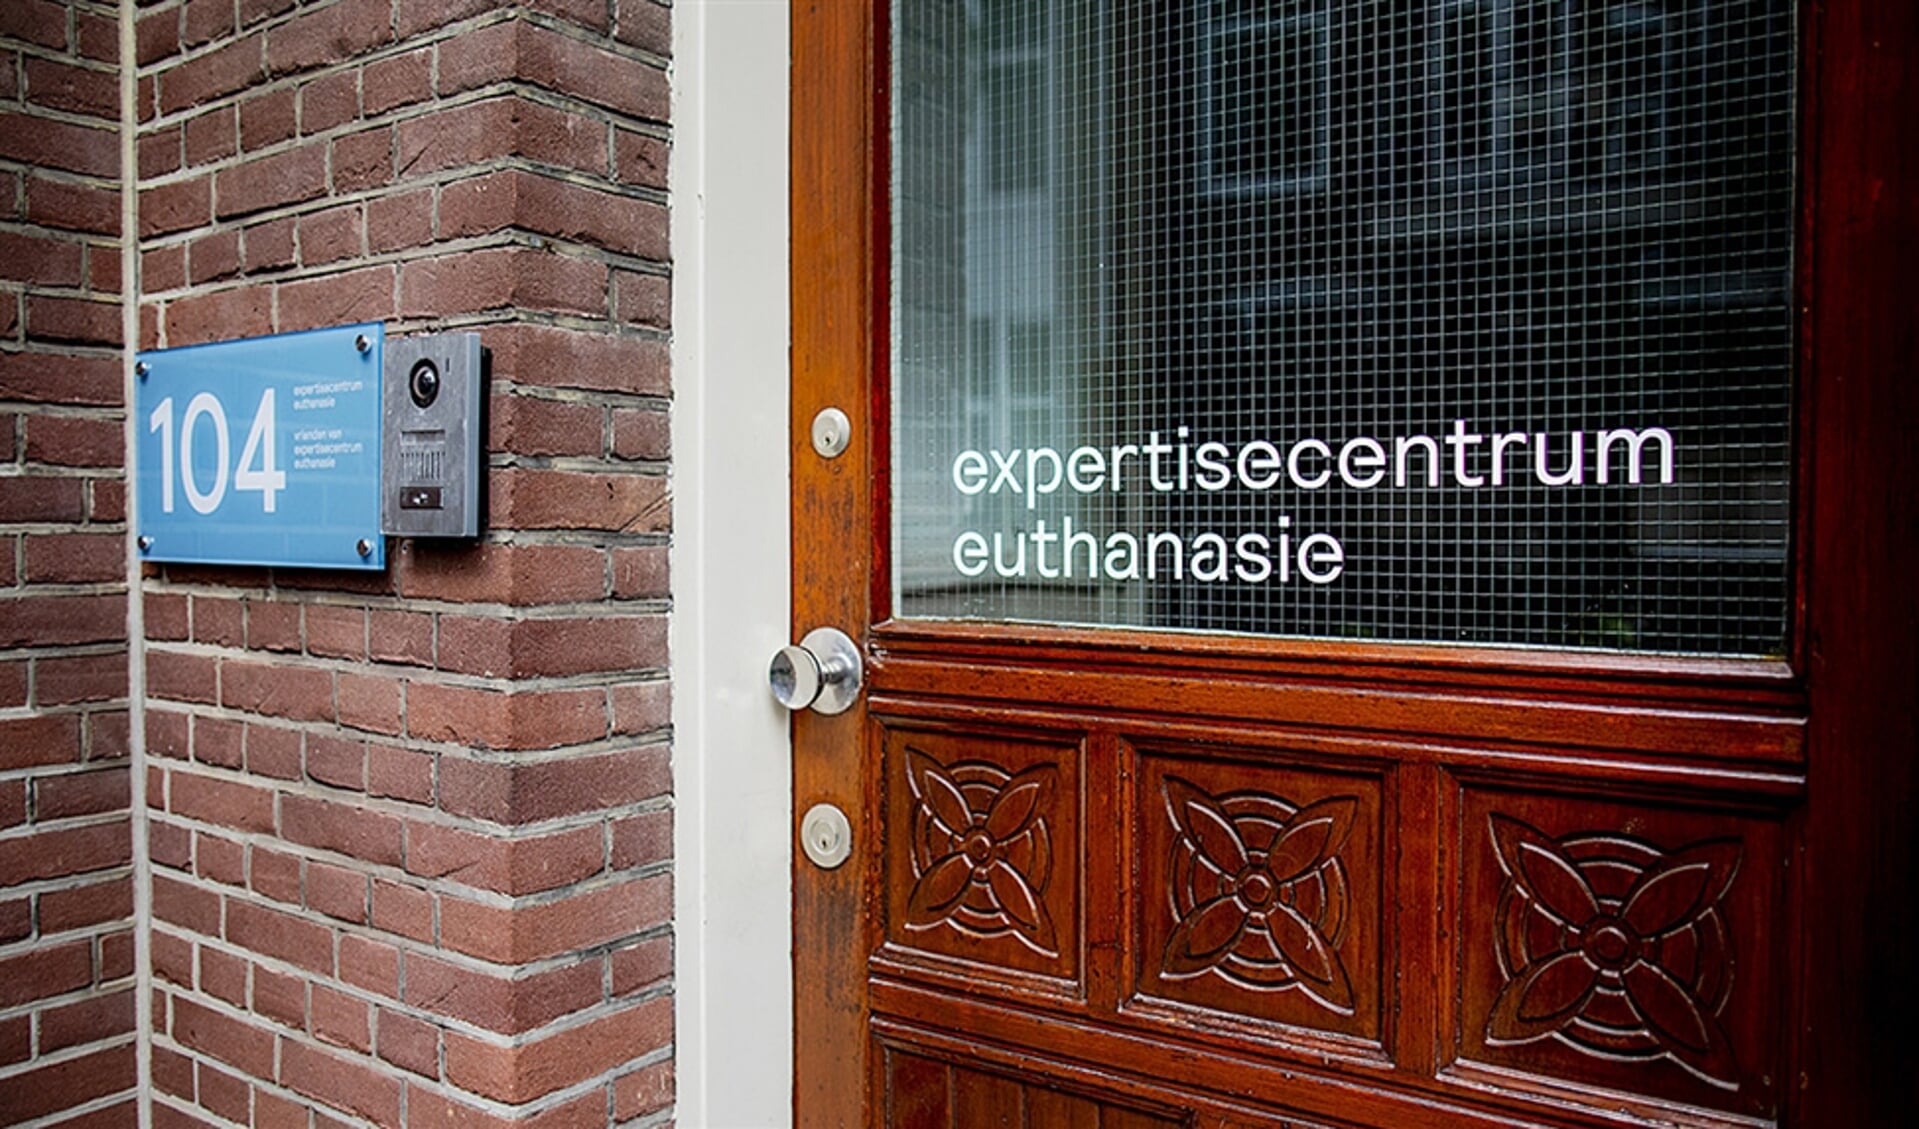 Minister Hugo de Jonge wil het Expertisecentrum Euthanasie eventueel geld geven om huisartsen bij te scholen in praten over het levenseinde.